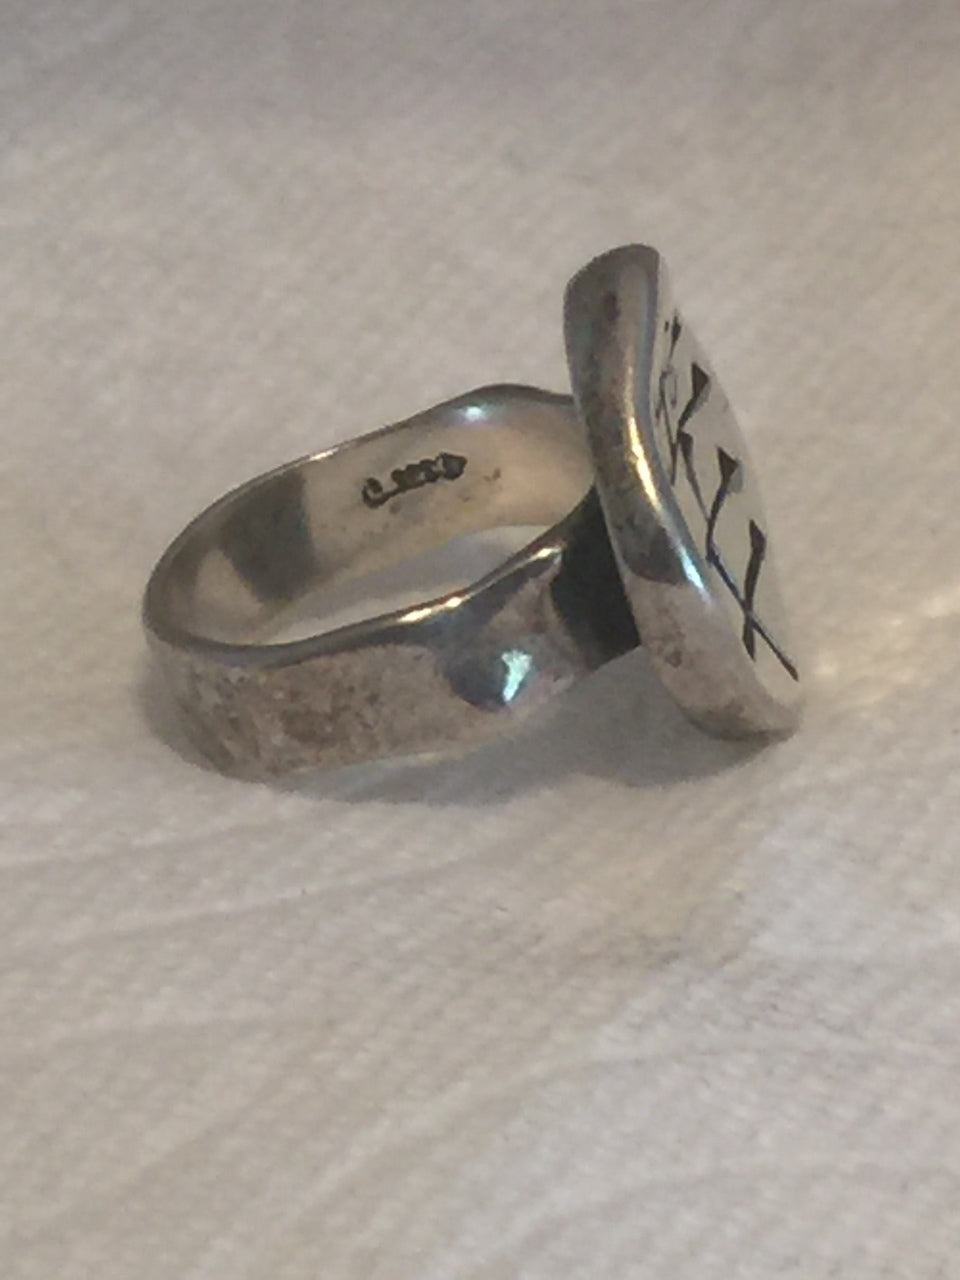 Vintage Sterling Silver Southwest Tribal  Ring   Signed  Joy  Size 8  11.5g